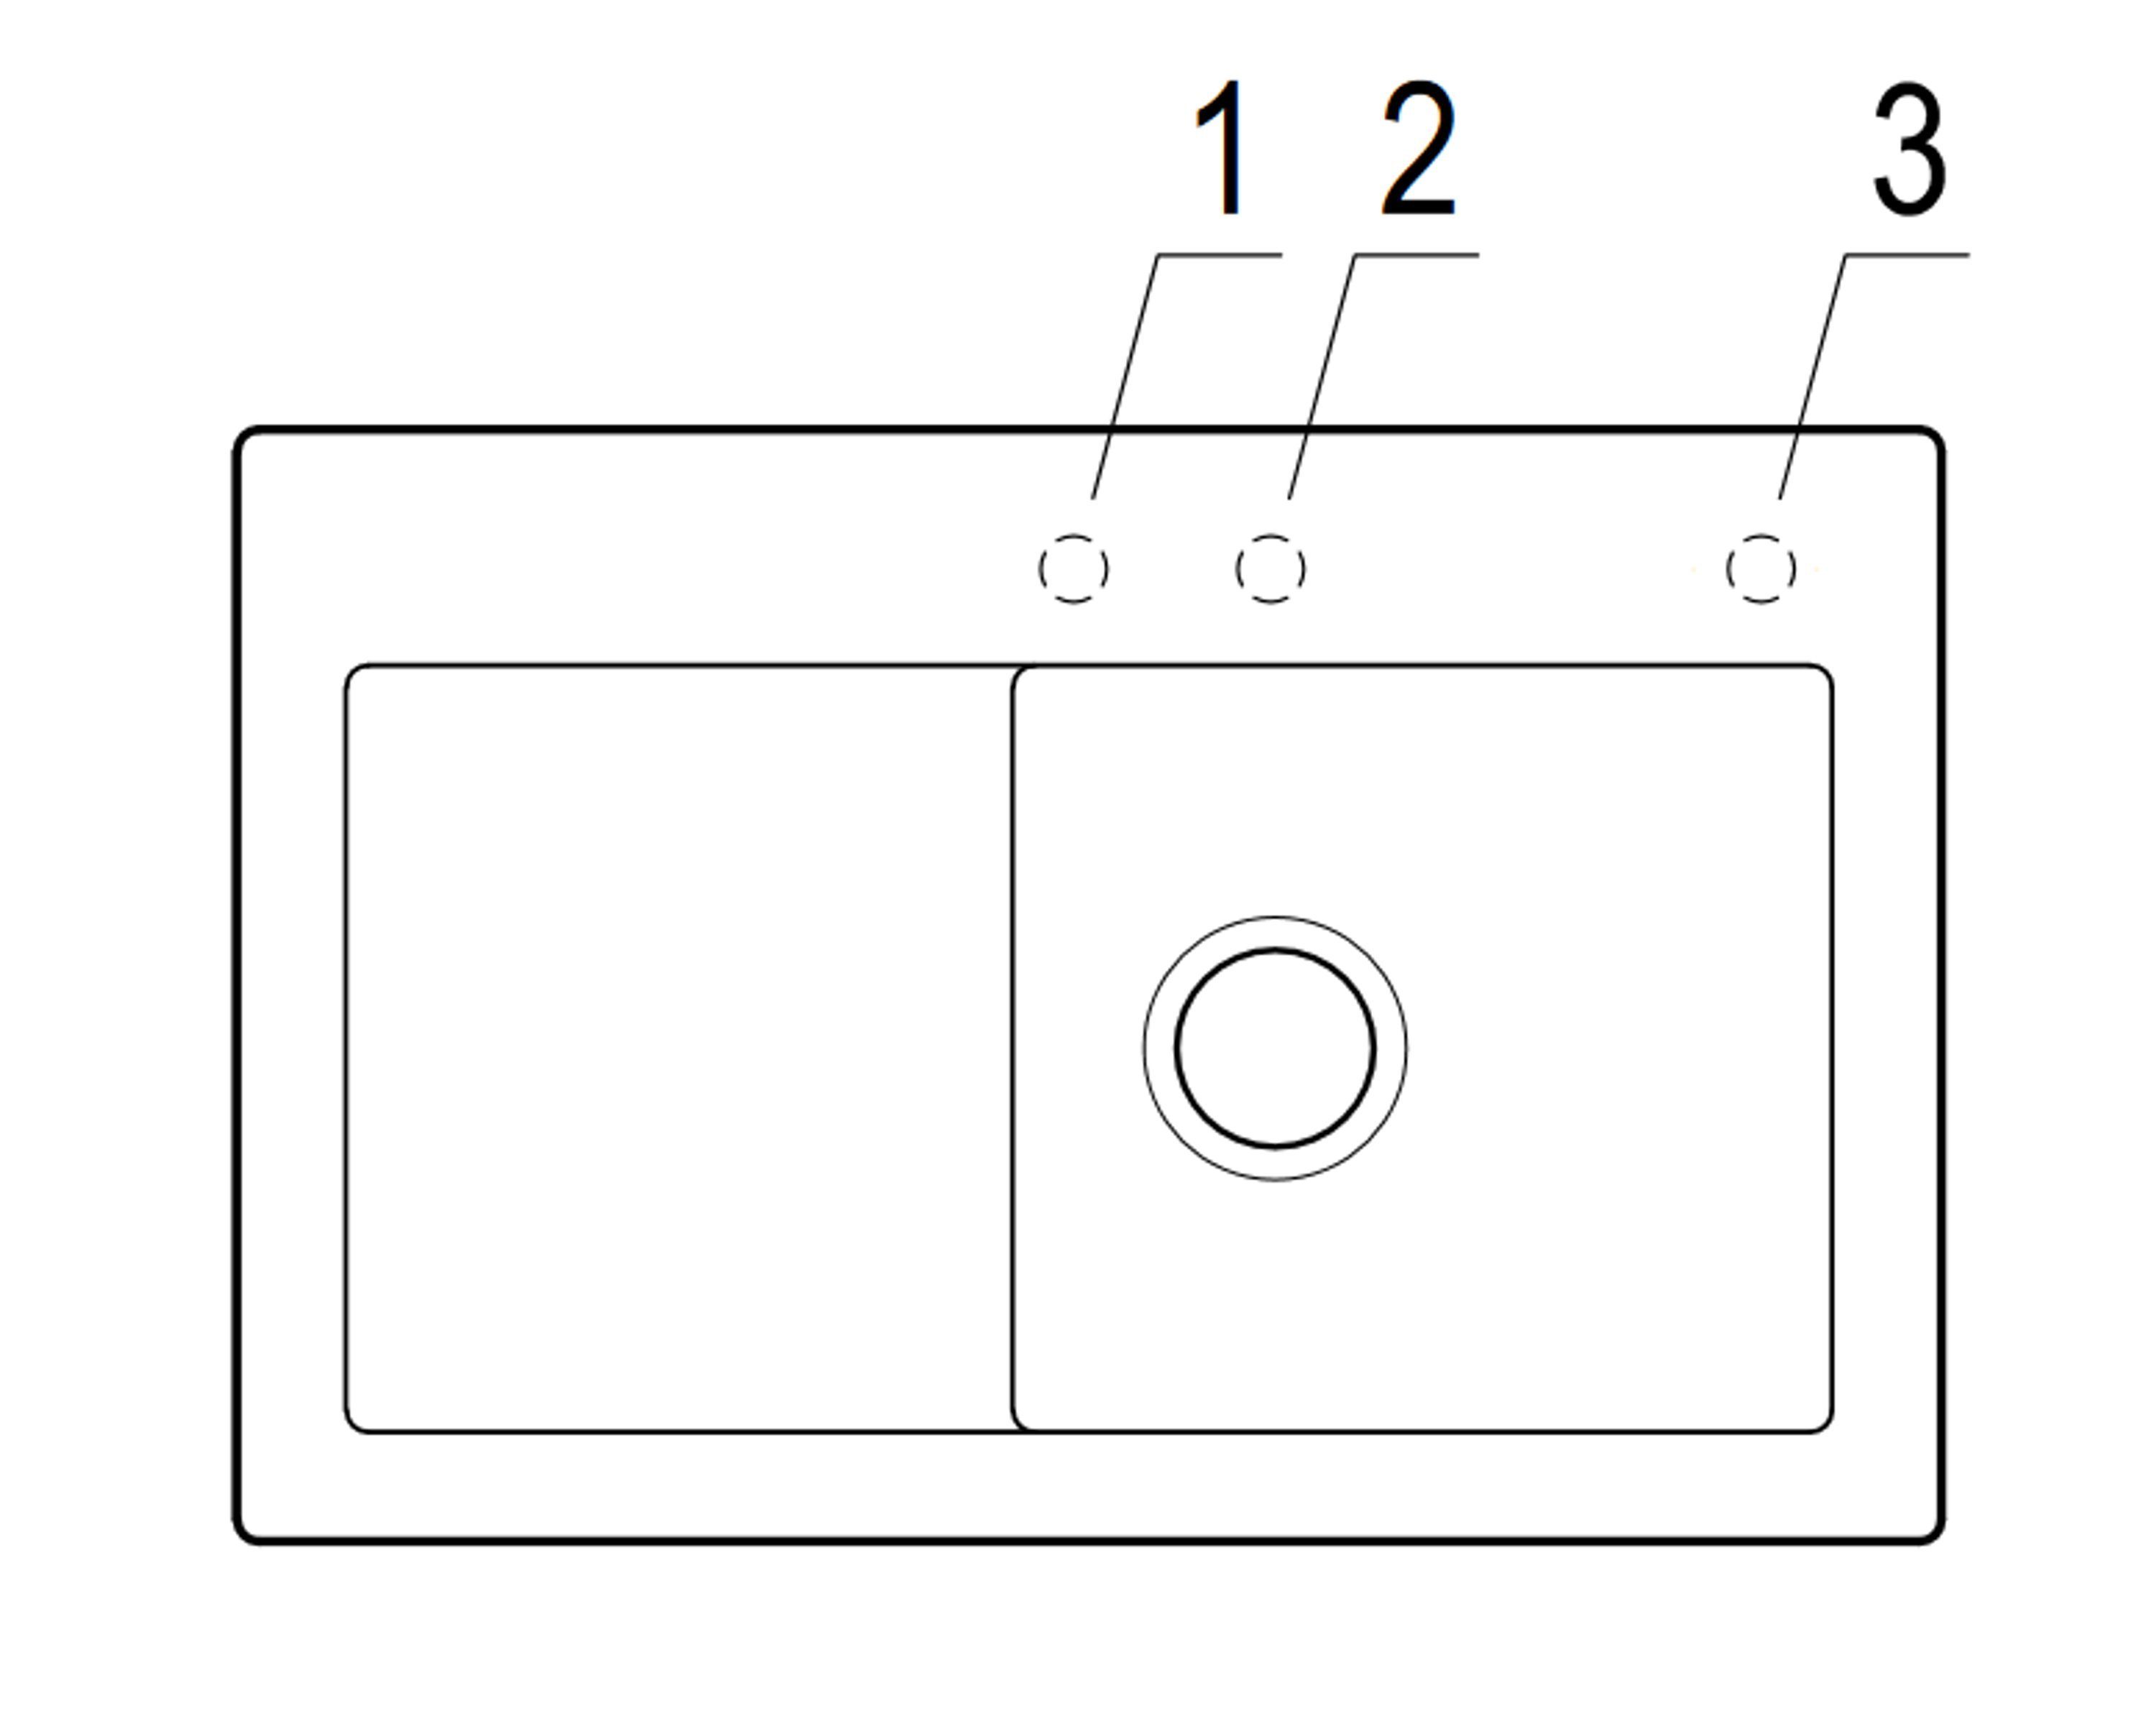 Becken Serie, möglich cm, rechts KR, Subway und Boch & Villeroy Küchenspüle Rechteckig, links 1F 6714 74.5/22